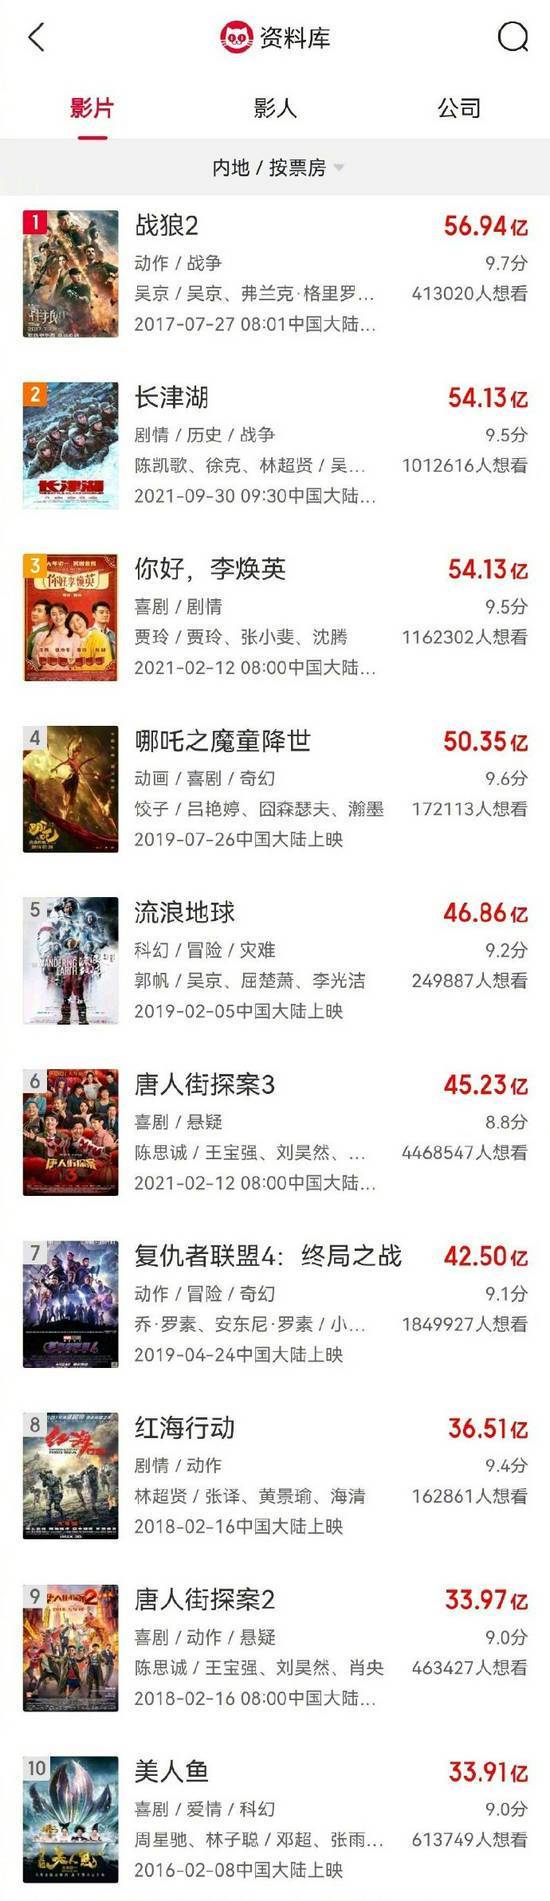 《长津湖》票房超《李焕英》 暂列中国影史榜第二